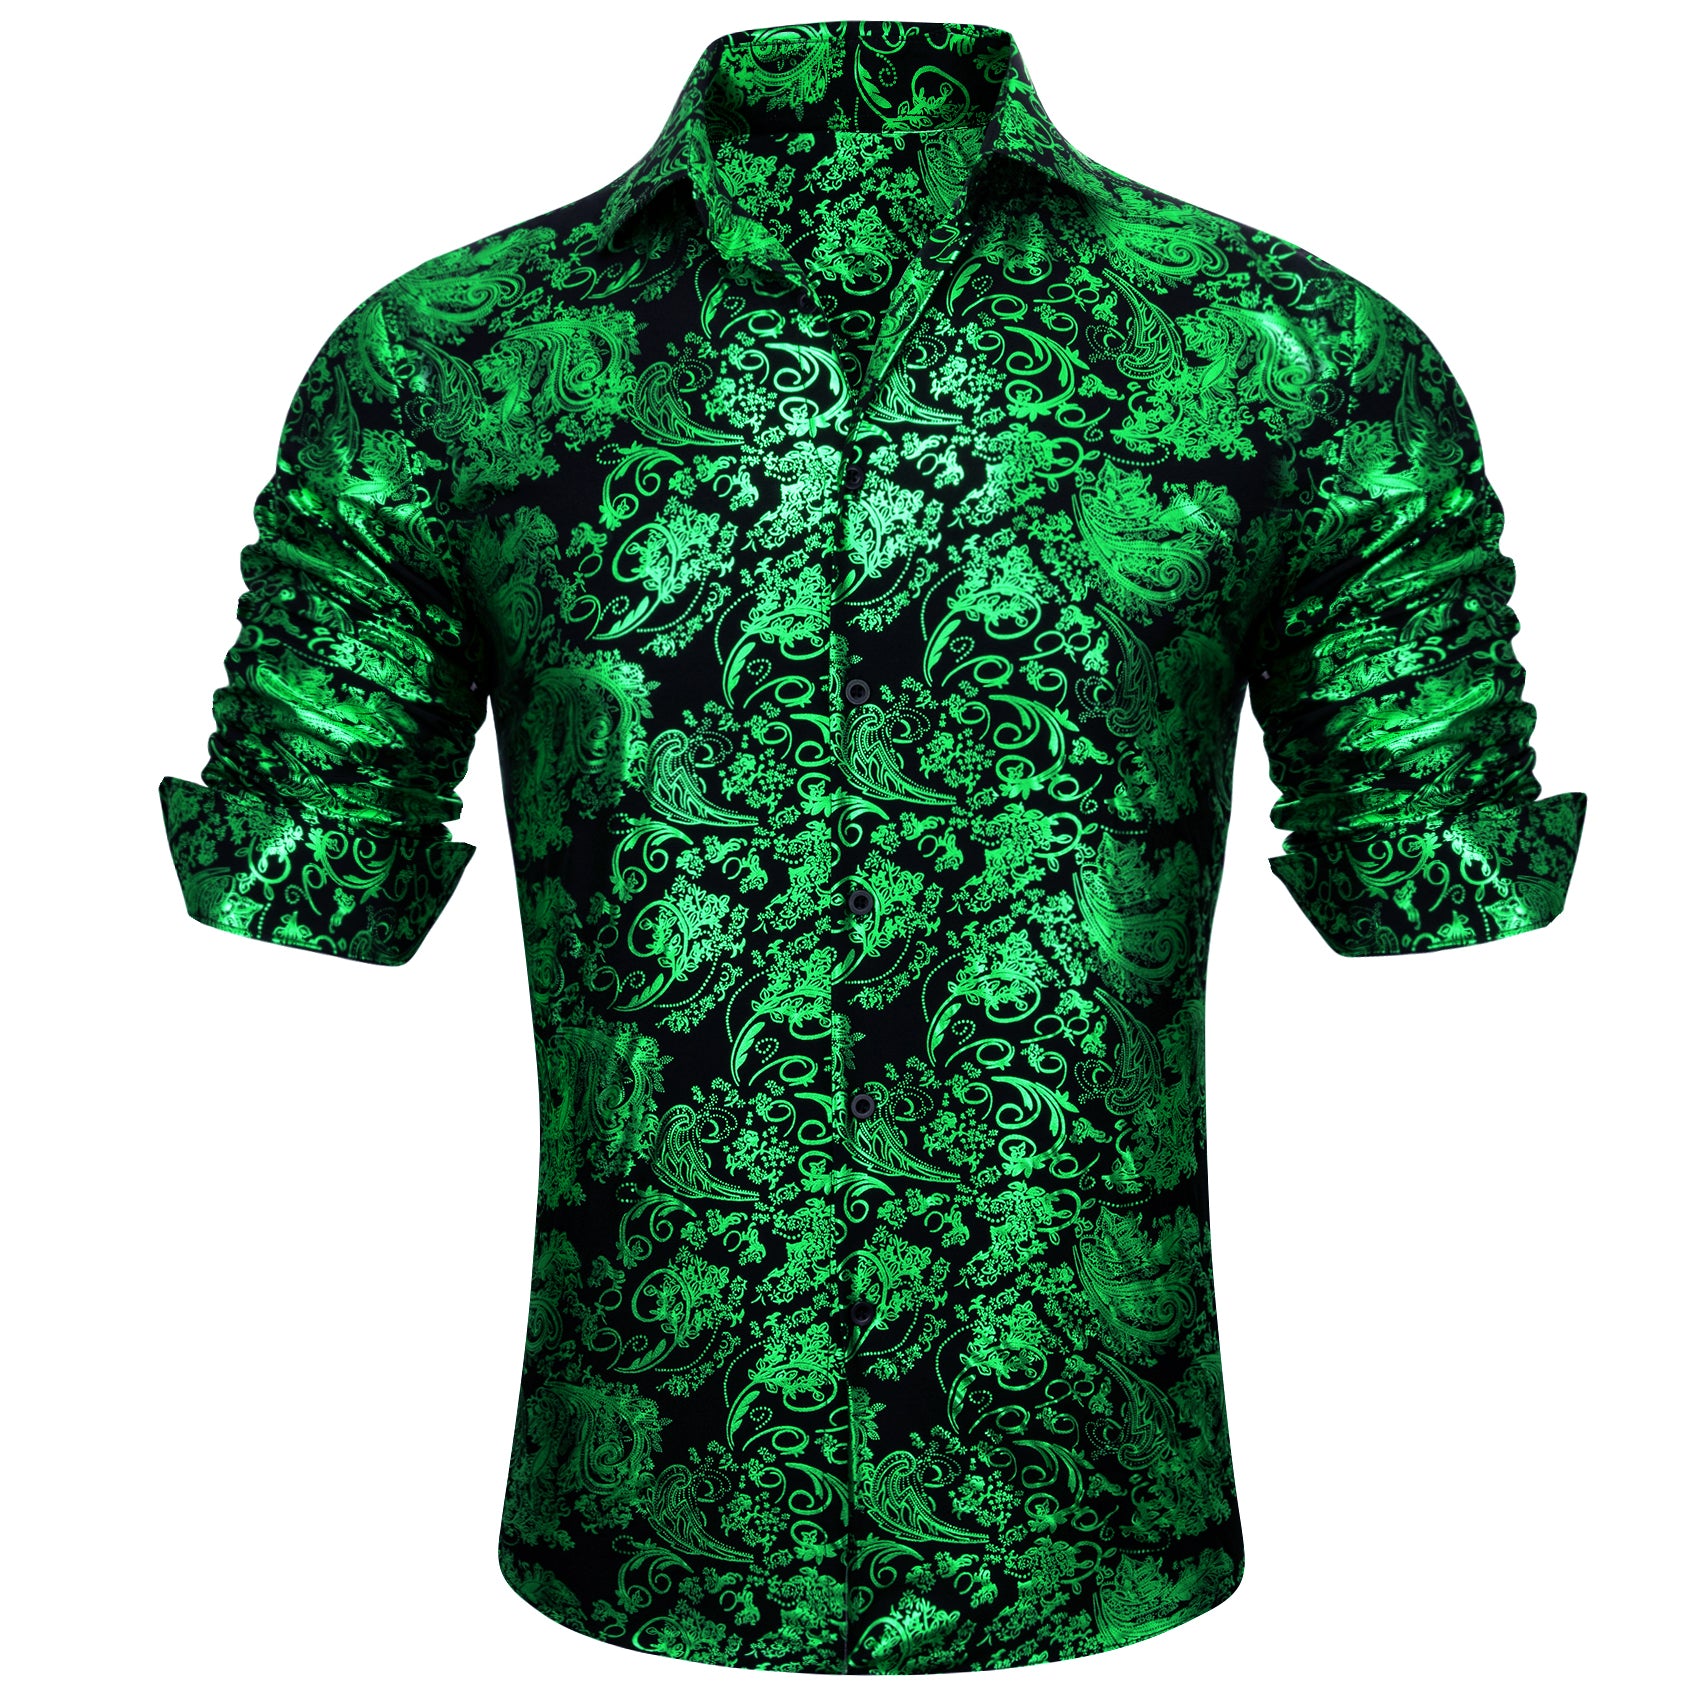 Barry.wang Light Green Paisley Silk Men's Shirt